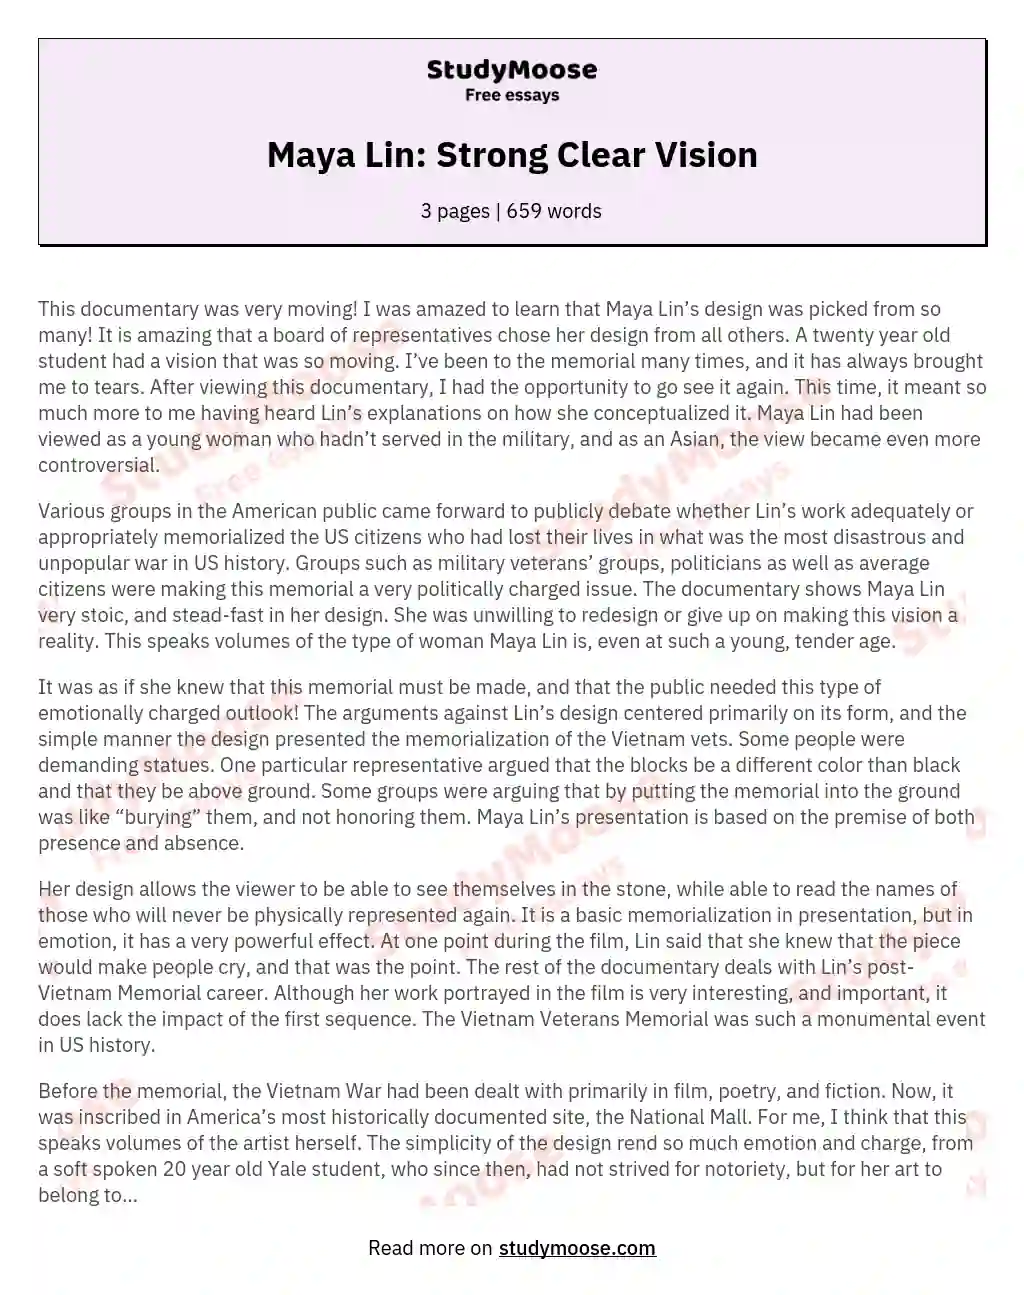 Maya Lin: Strong Clear Vision essay